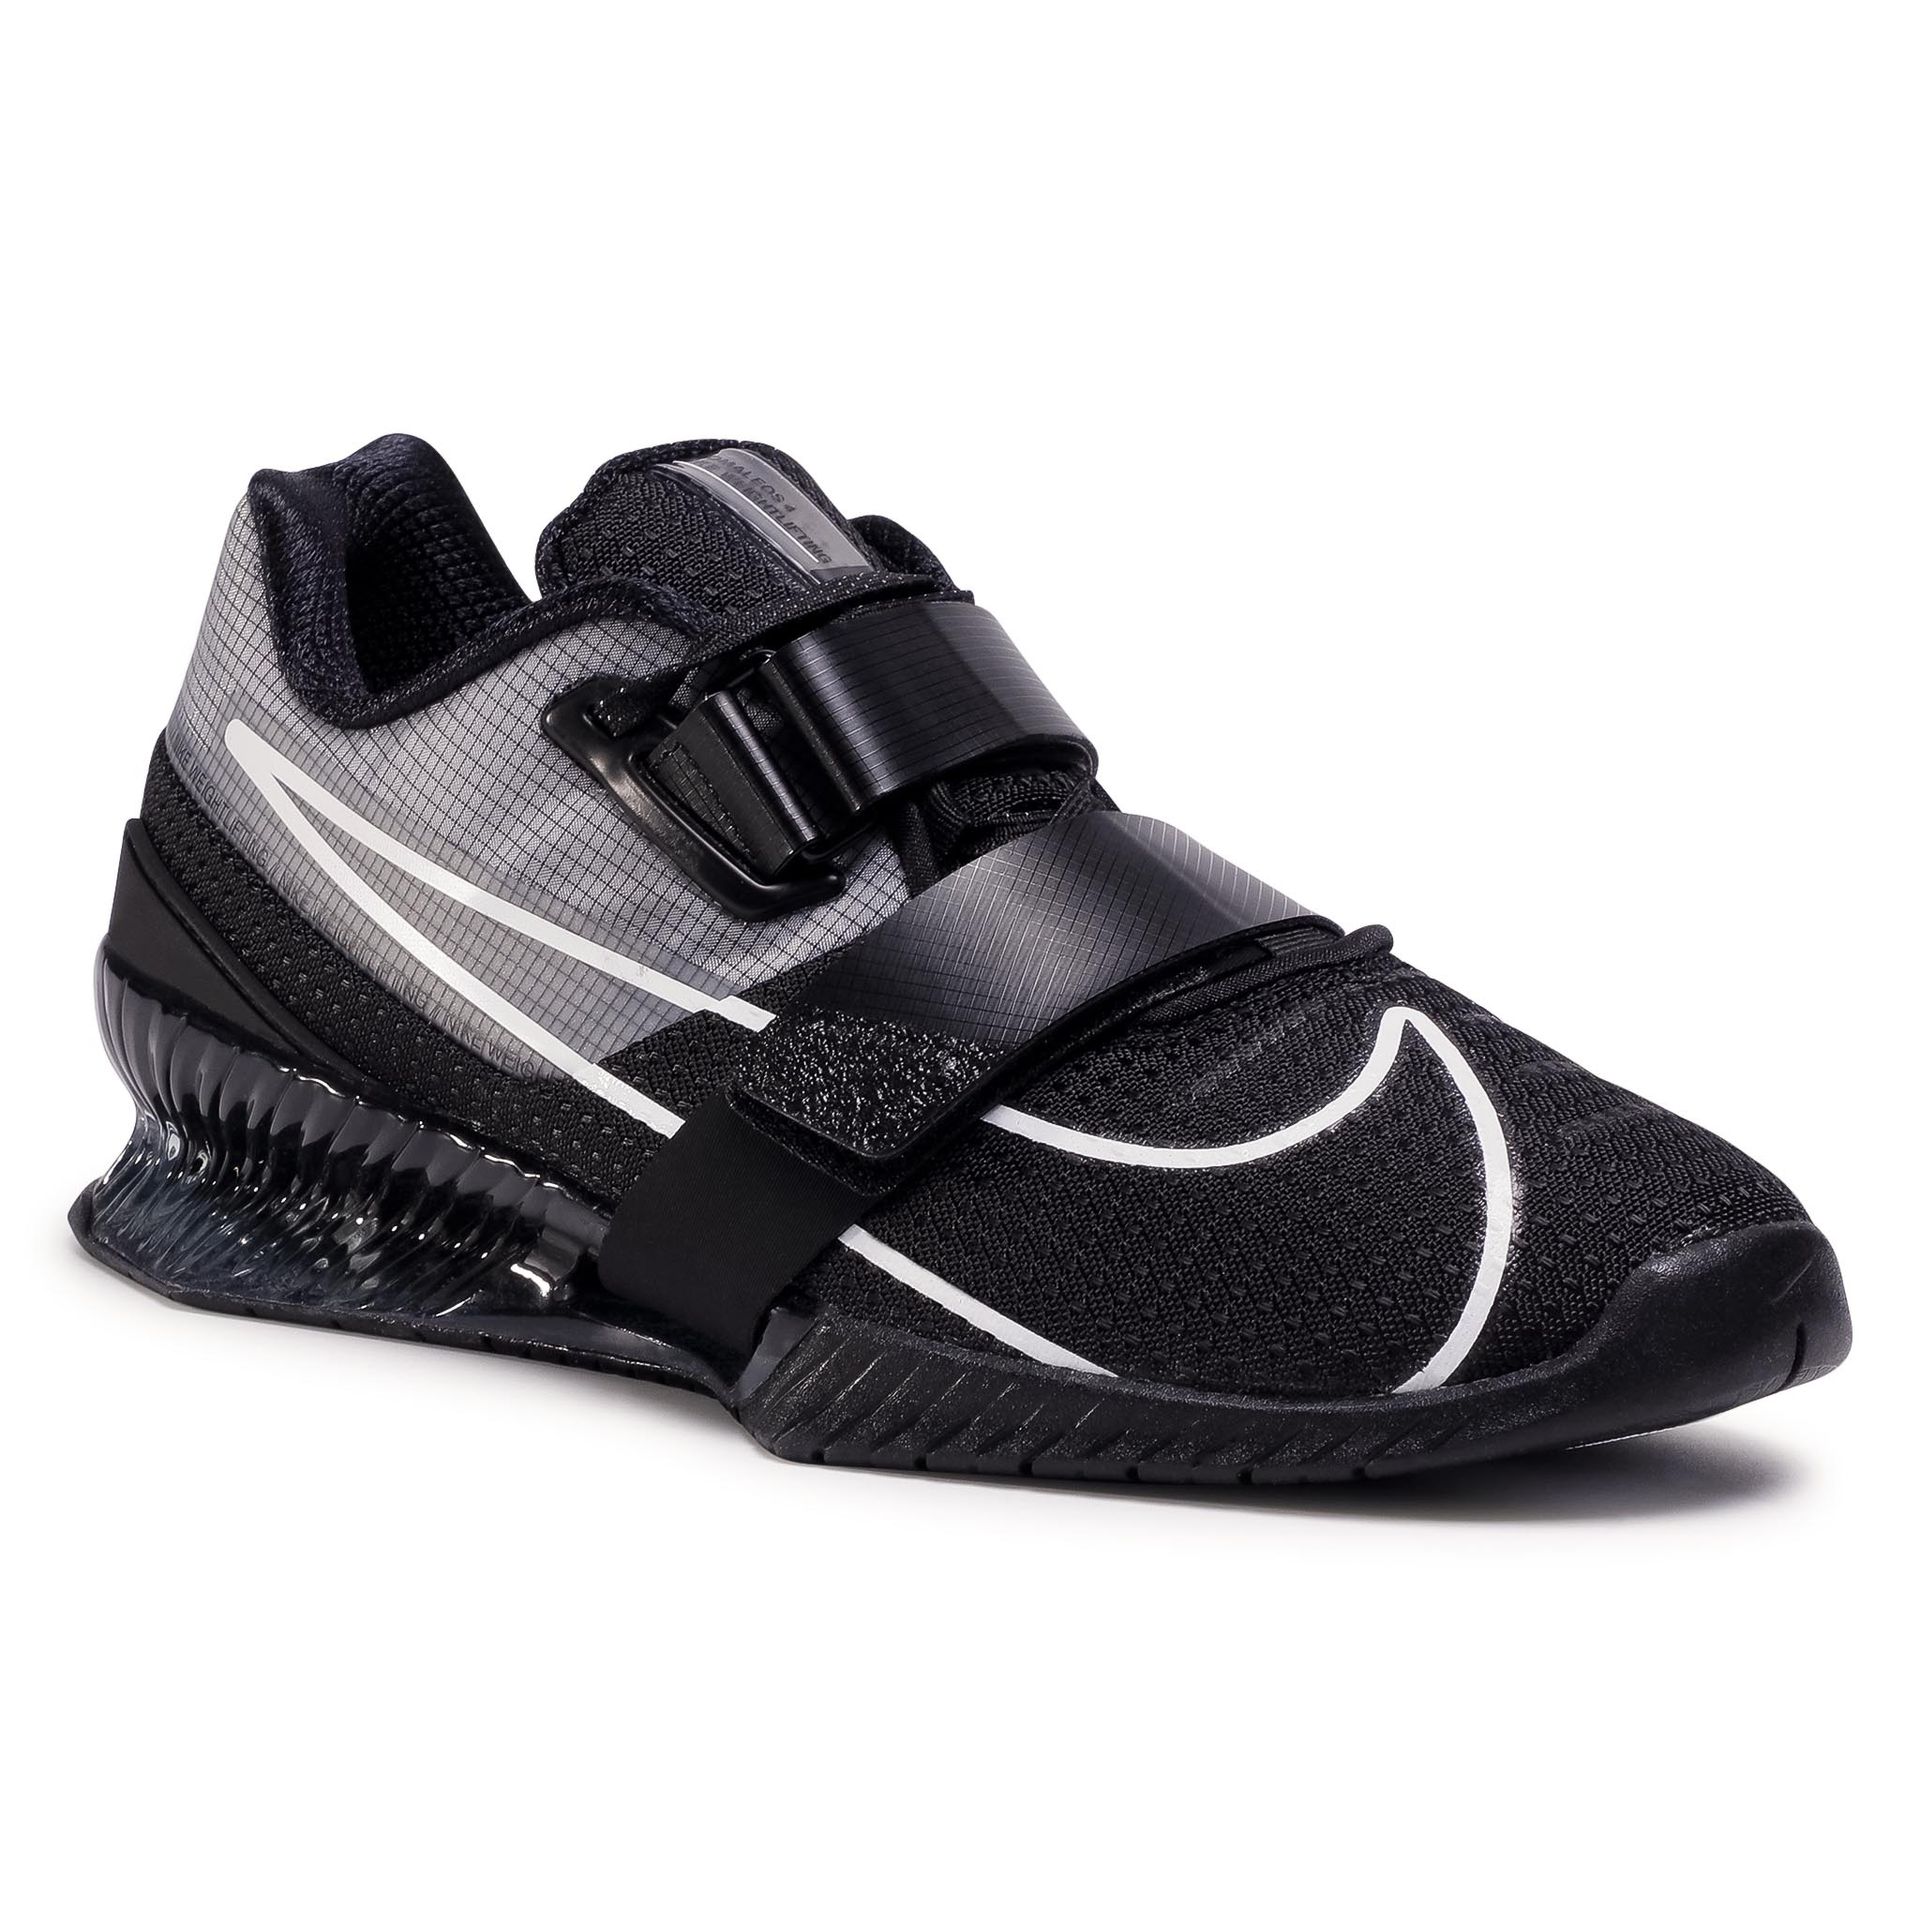 Nike Buty turystyczne dla mężczyzn, kolor: czarny, rozmiar: 42.5 EU Black/White/Black